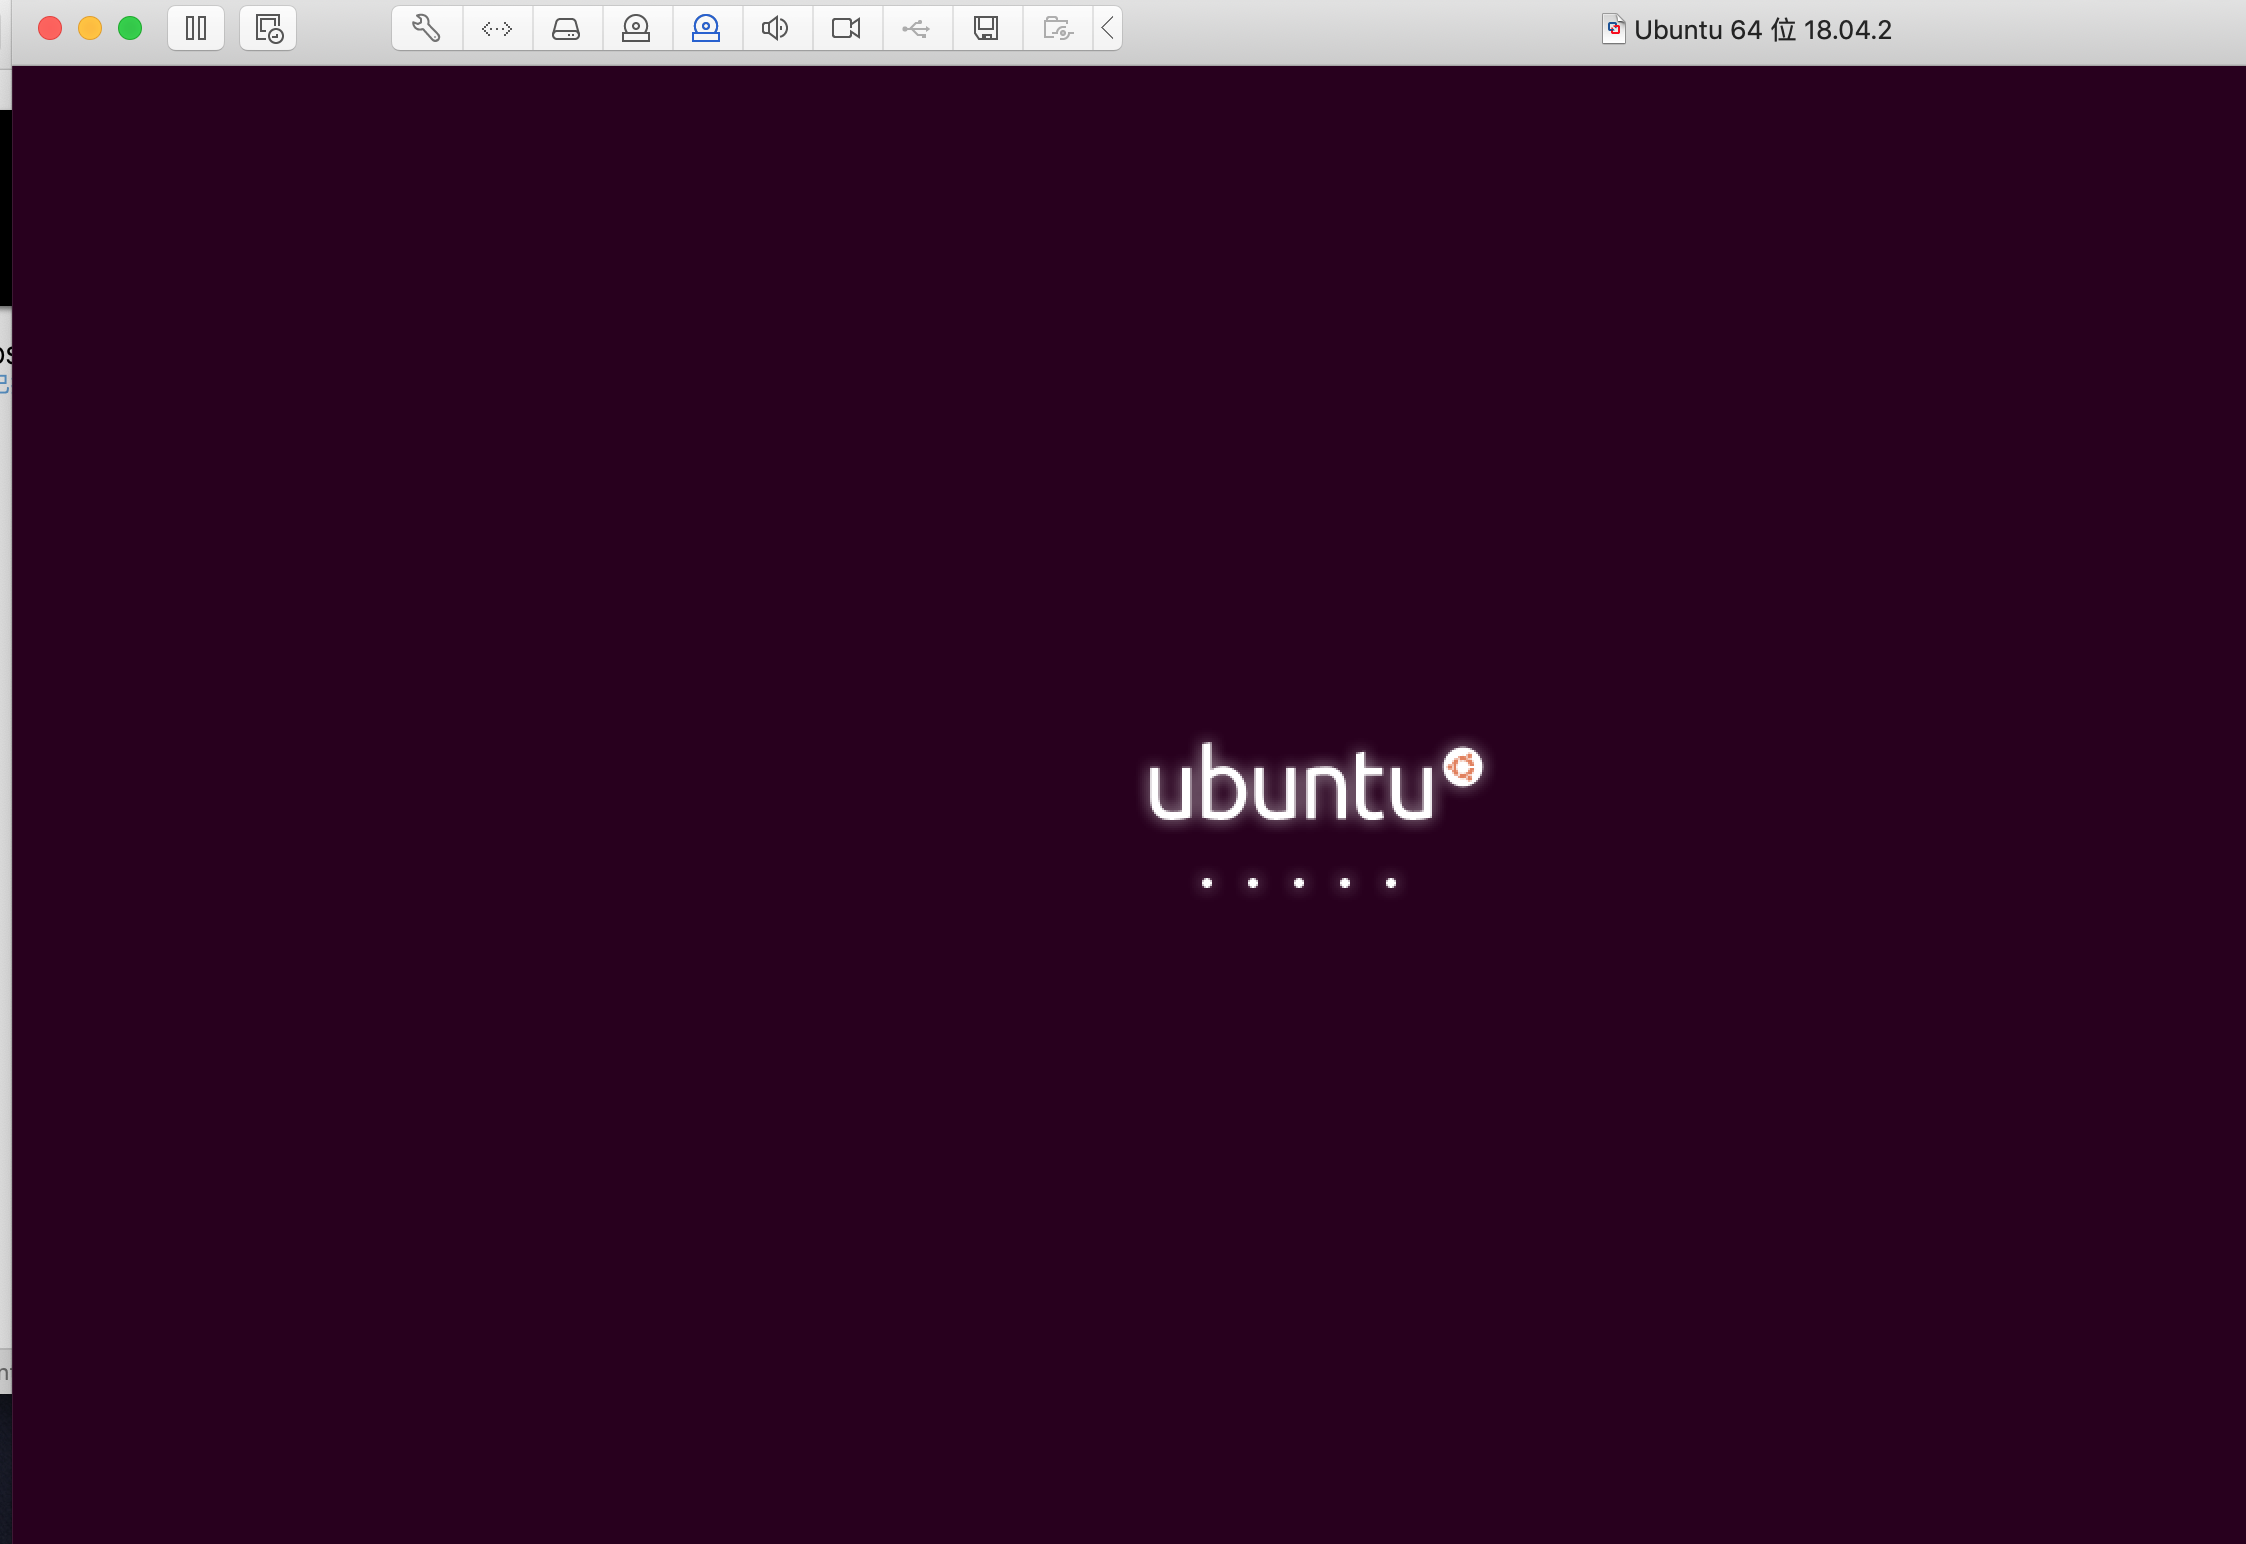 os-ubuntu-new-process-logo.png